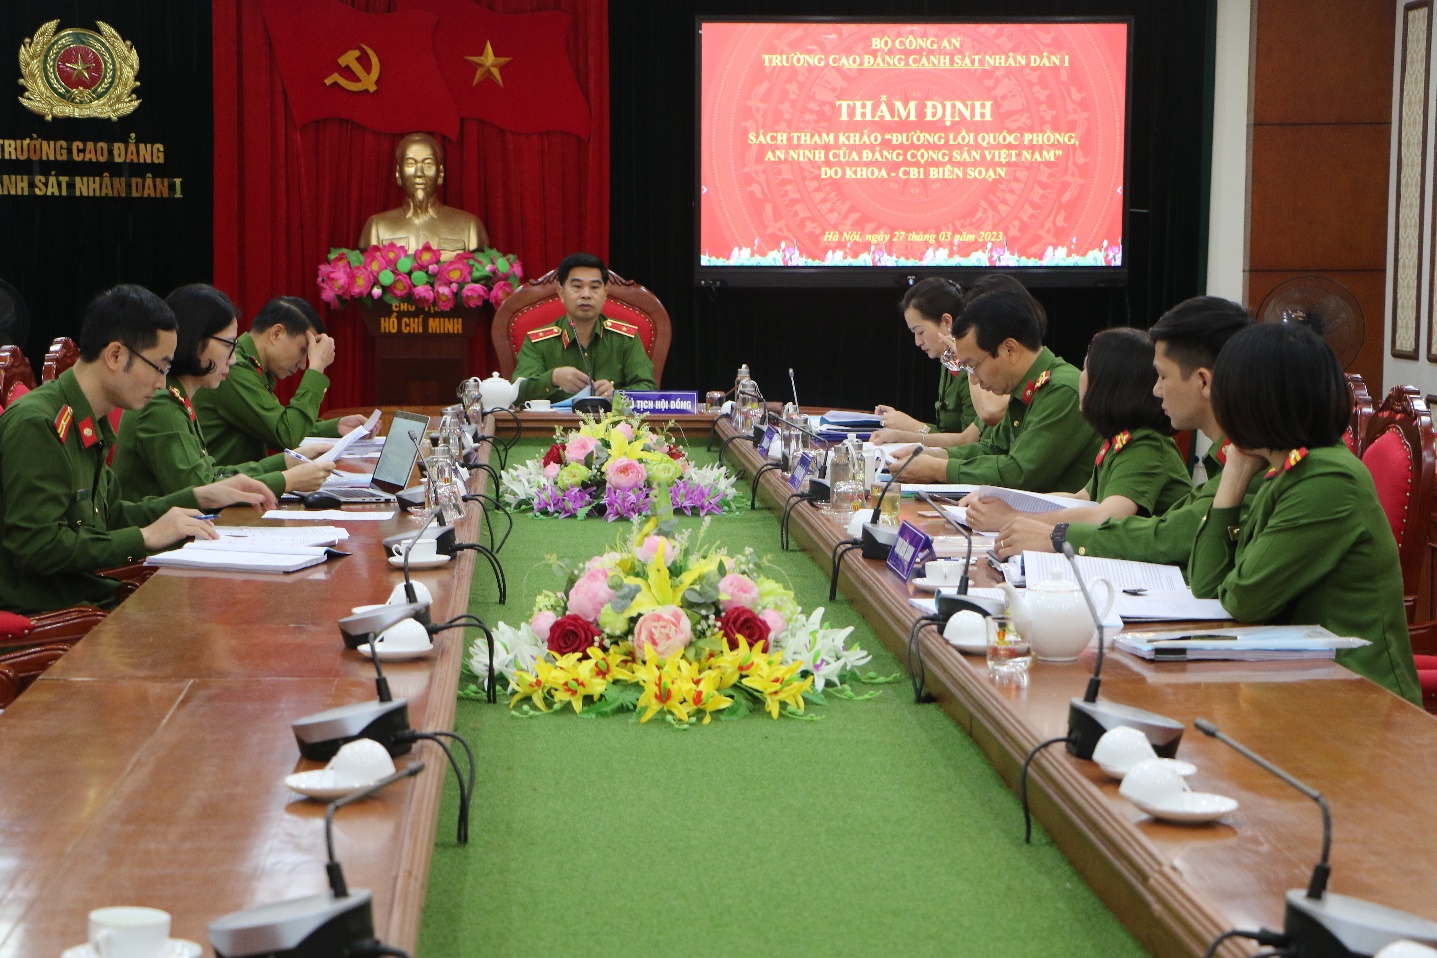 Tổ chức thẩm định sách tham khảo “Đường lối quốc phòng, an ninh của Đảng Cộng sản Việt Nam”